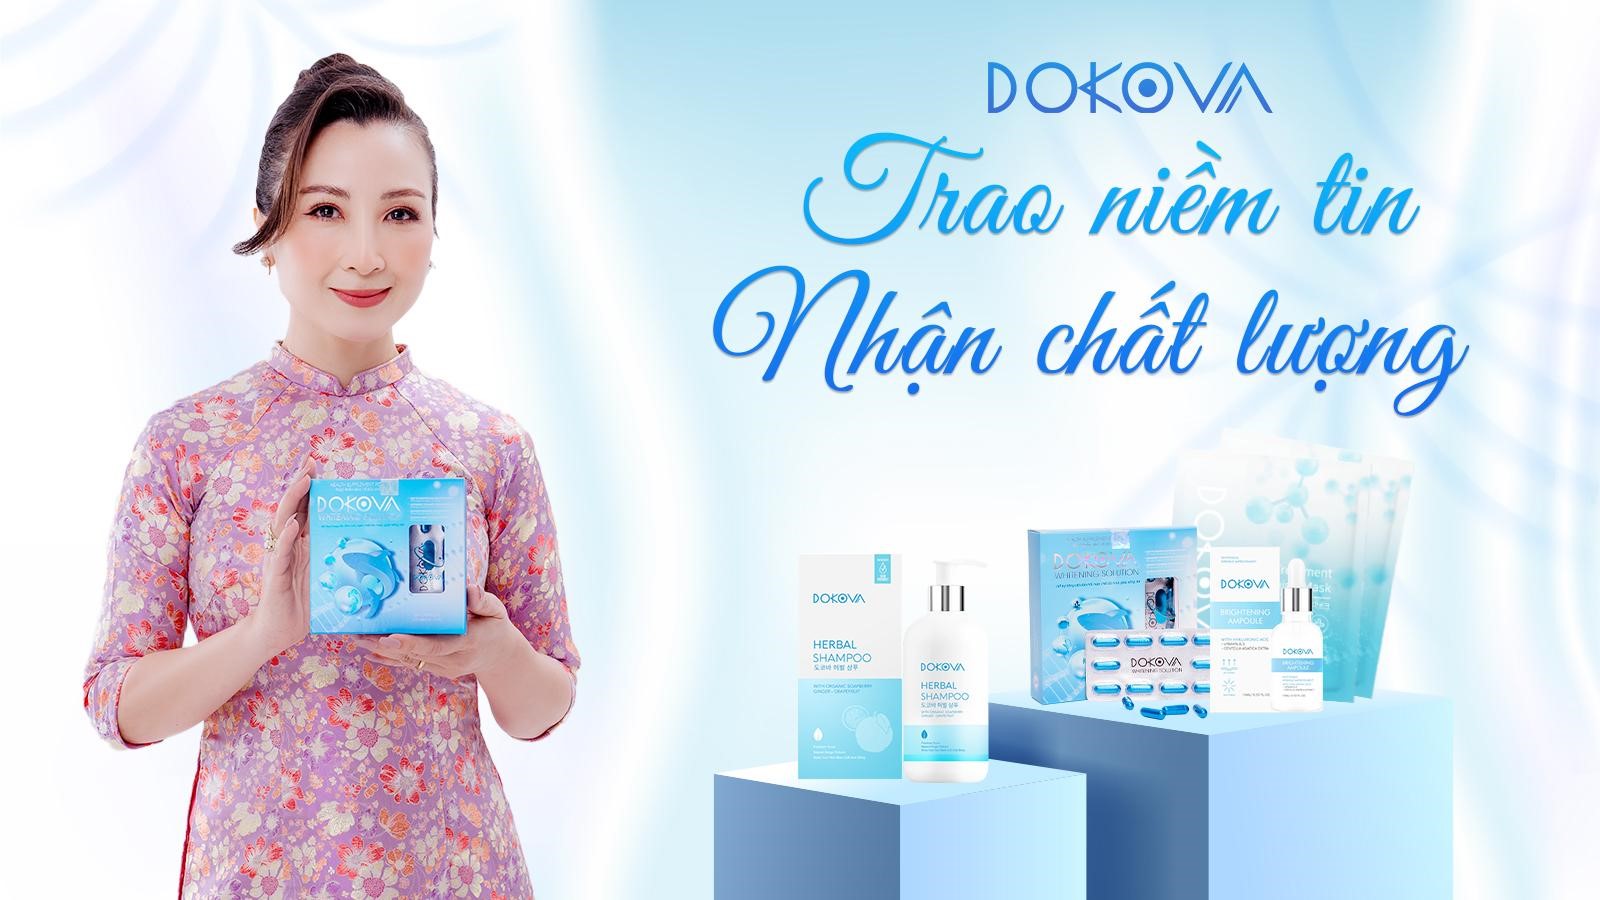  Dokova thương hiệu uy tín nhận được yêu thích từ khách hàng 